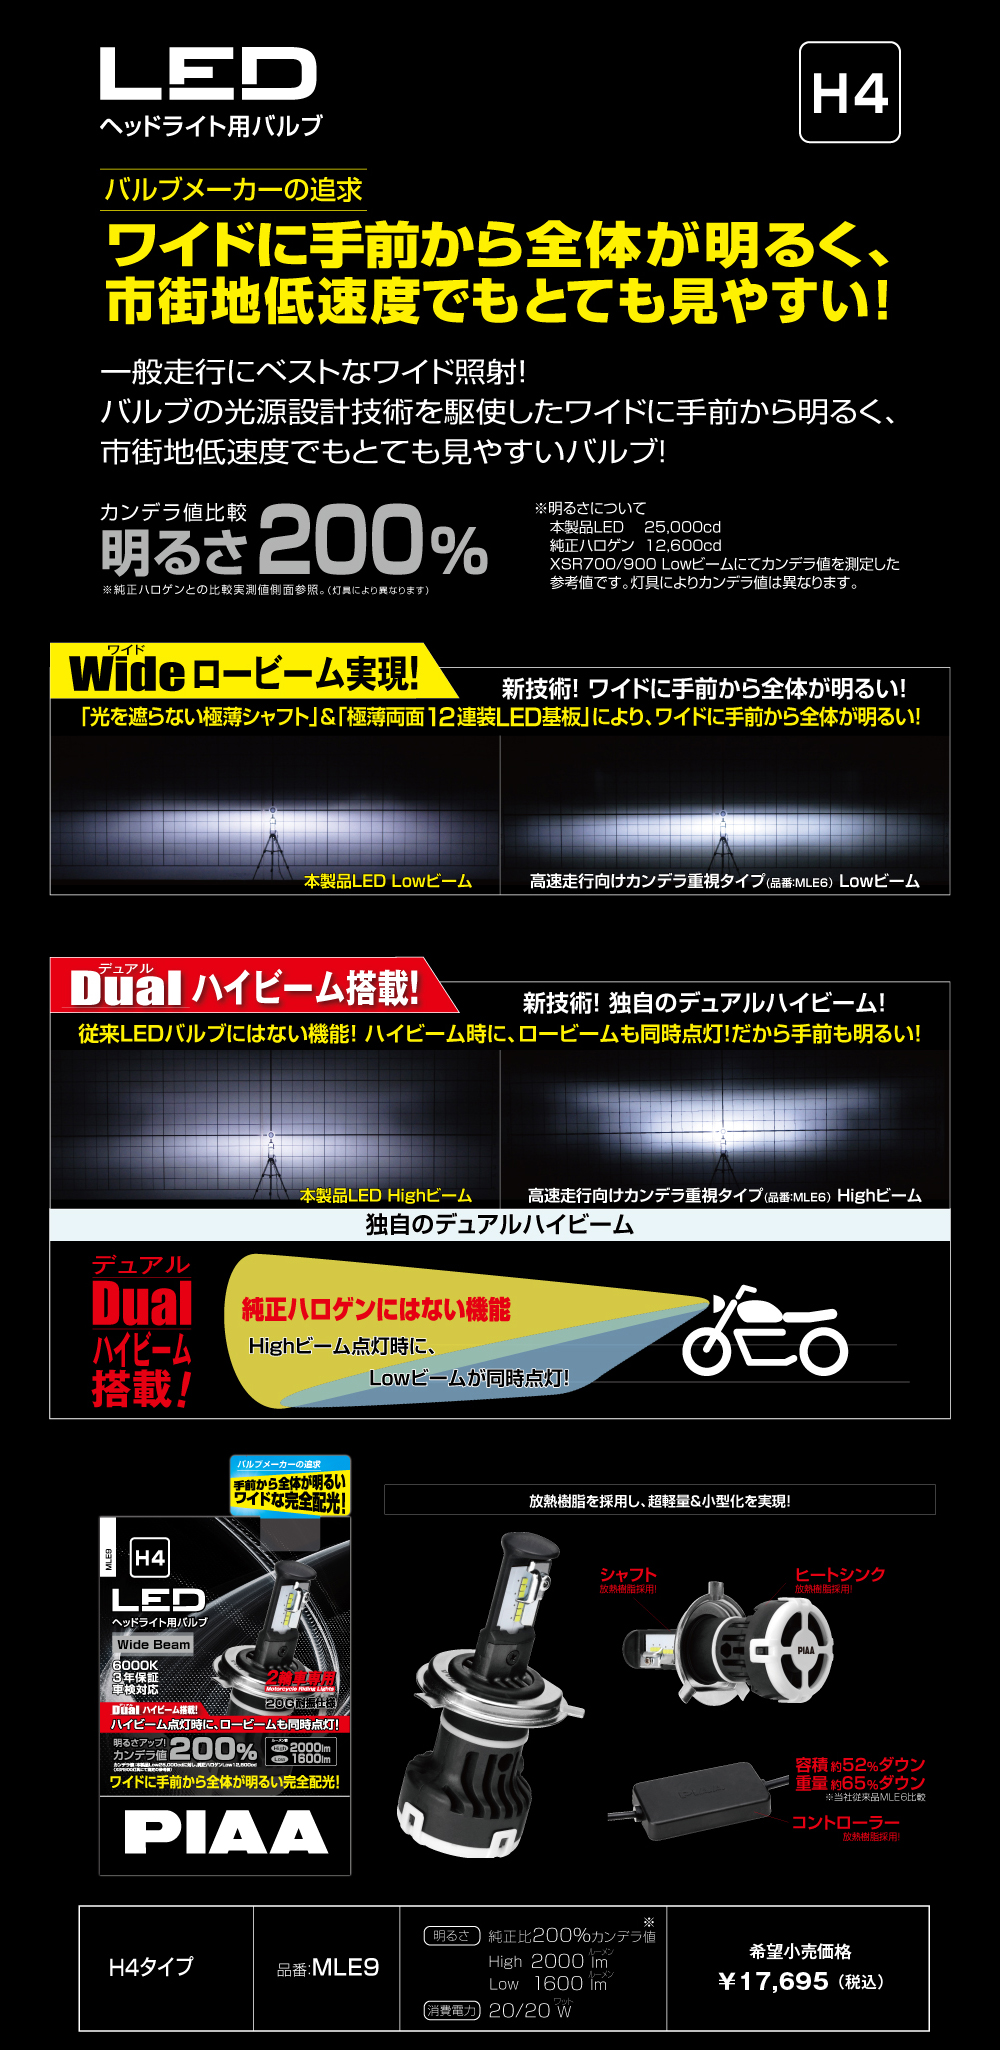 10747円 国内外の人気 PIAA バイク用ヘッドライトバルブ LED 6000K DUAL HIBEAM ハイ ロー 純正比較明るさ128%UP マツシマ製PH1